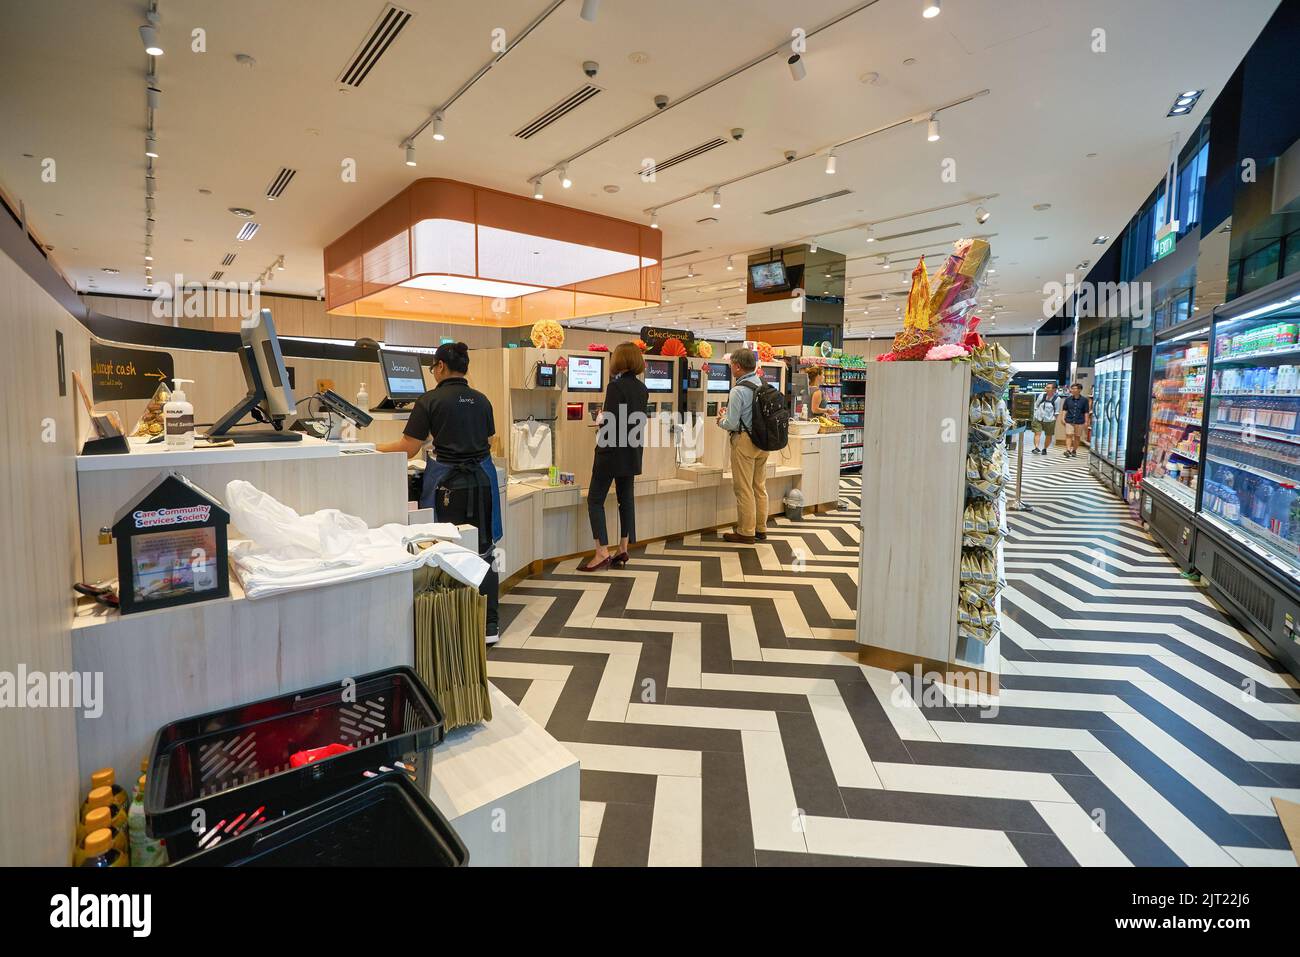 SINGAPUR - 20. JANUAR 2020: Einrichtungen zum Selbstauschecken im Jasons Deli in den Shoppes im Marina Bay Sands. Jasons Deli ist ein Supermarkt und Delikatessengeschäft Stockfoto